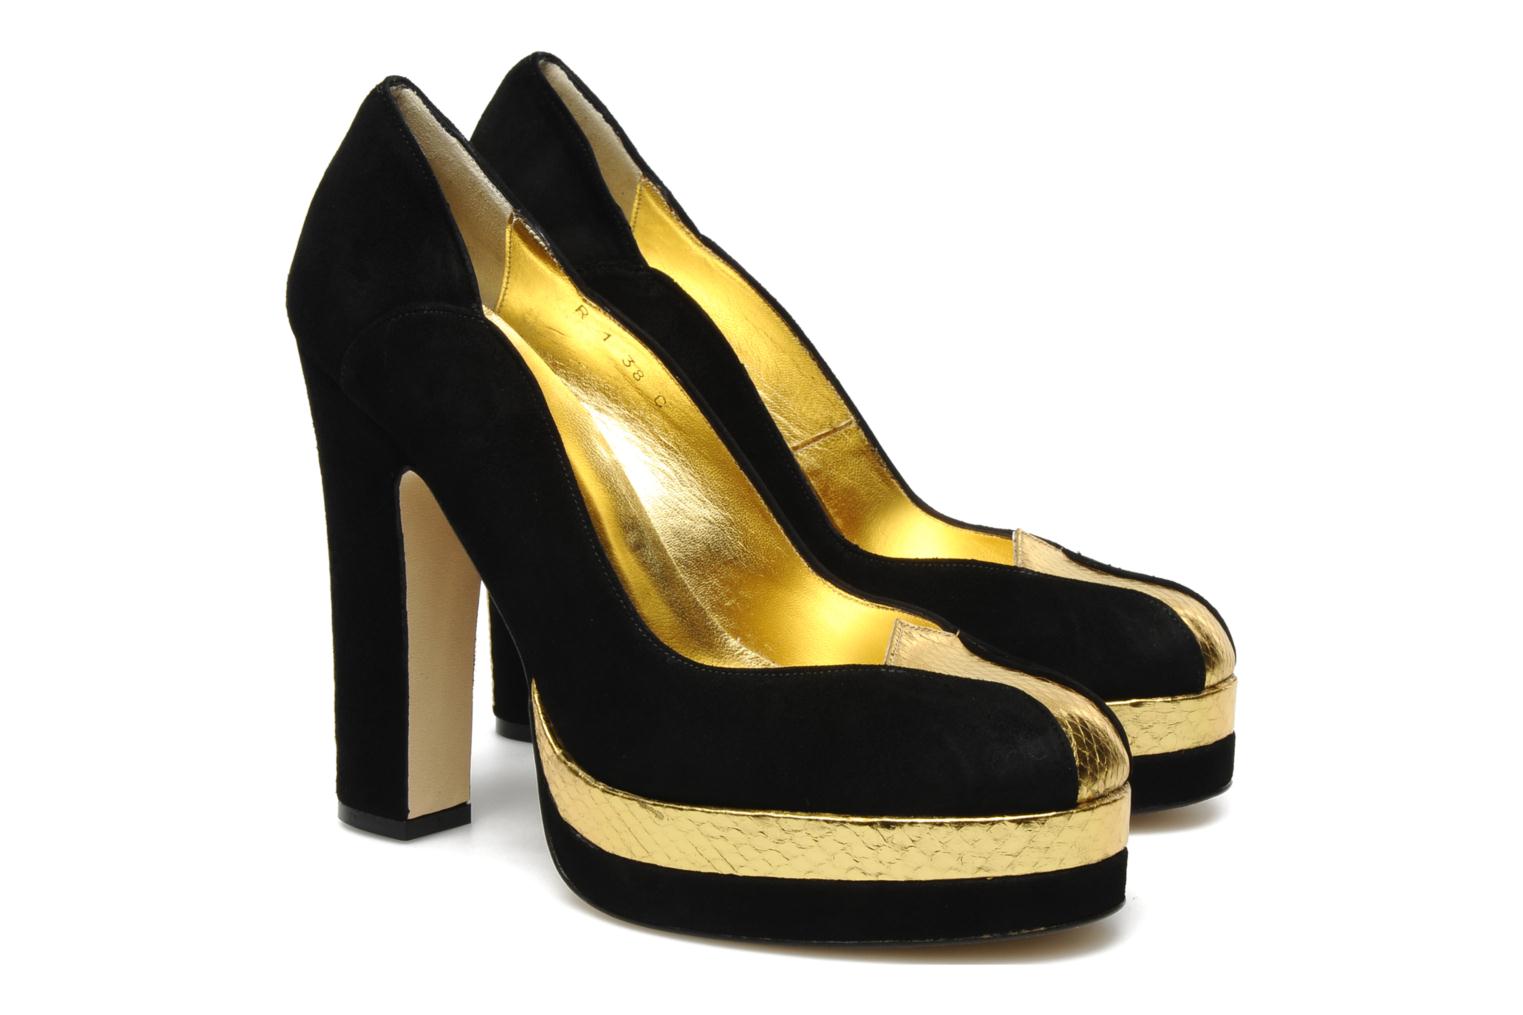 Terry de Havilland ADELE High heels in Black at Sarenza.co.uk (96675)